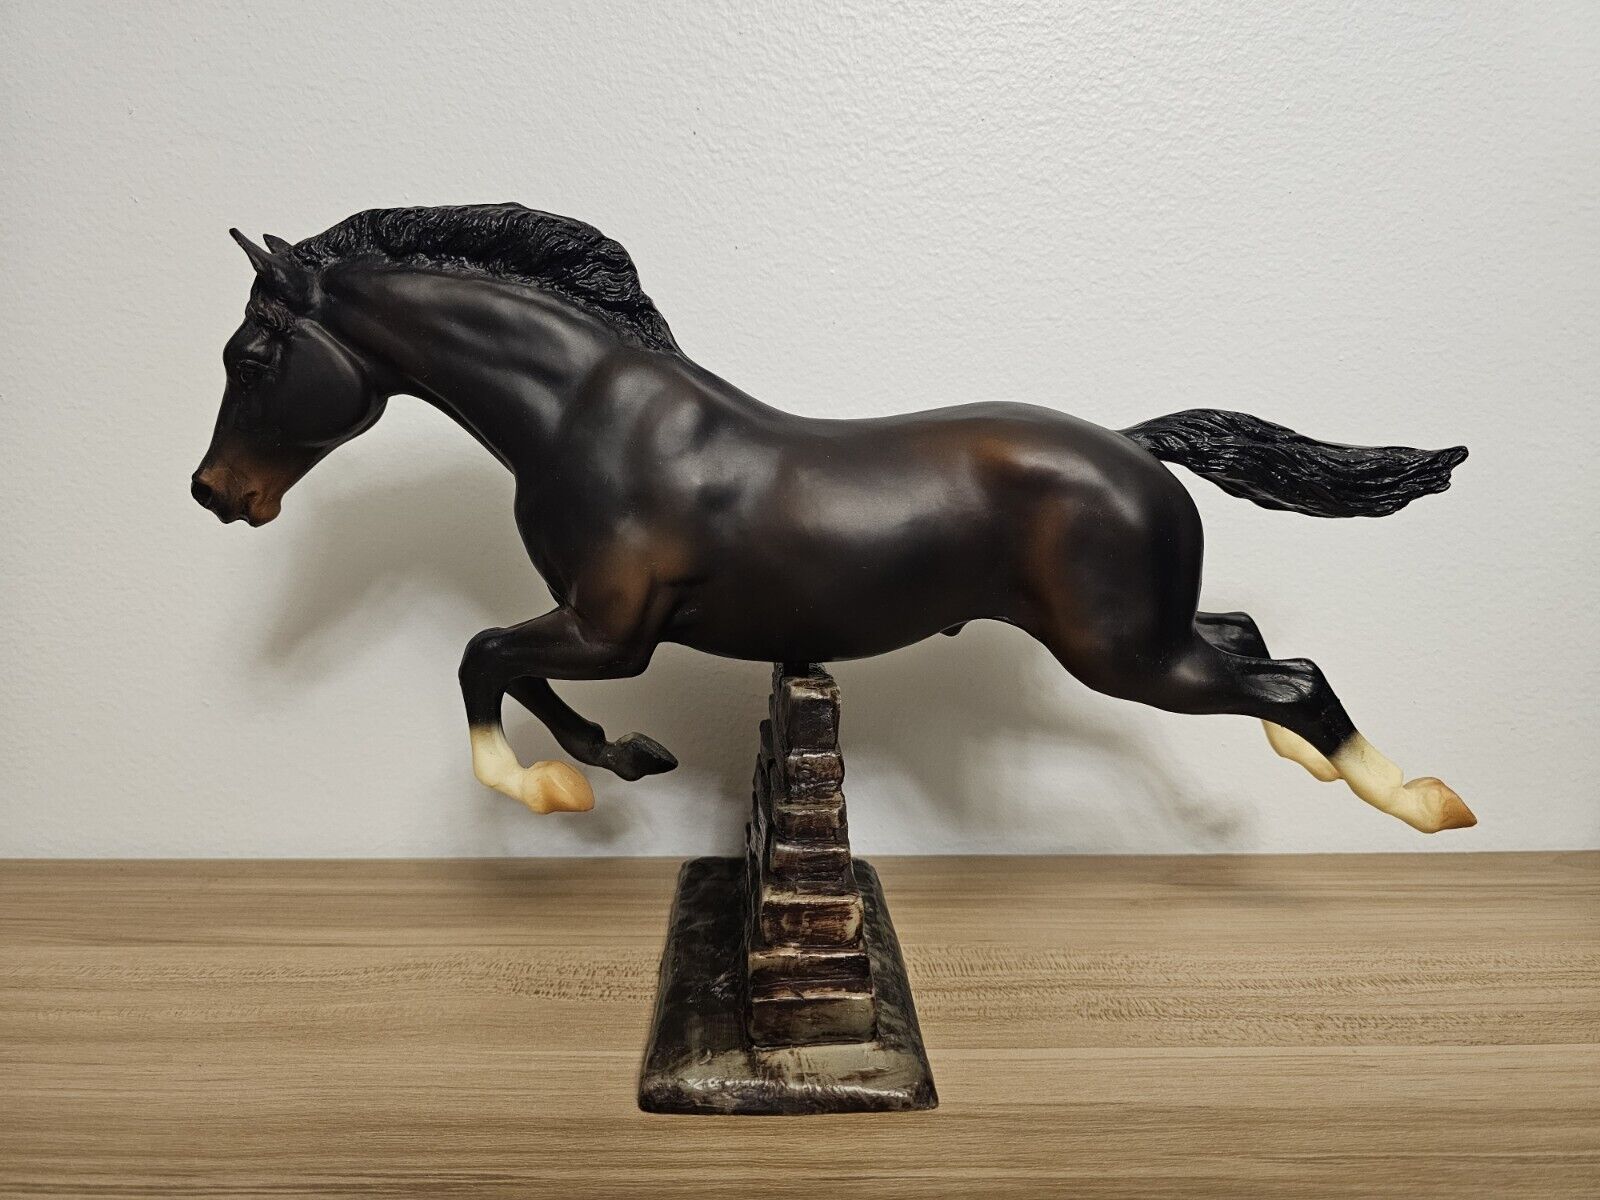 Vintage 1994 Breyer #886 Starlight Limited Edition Horse NIB NOS